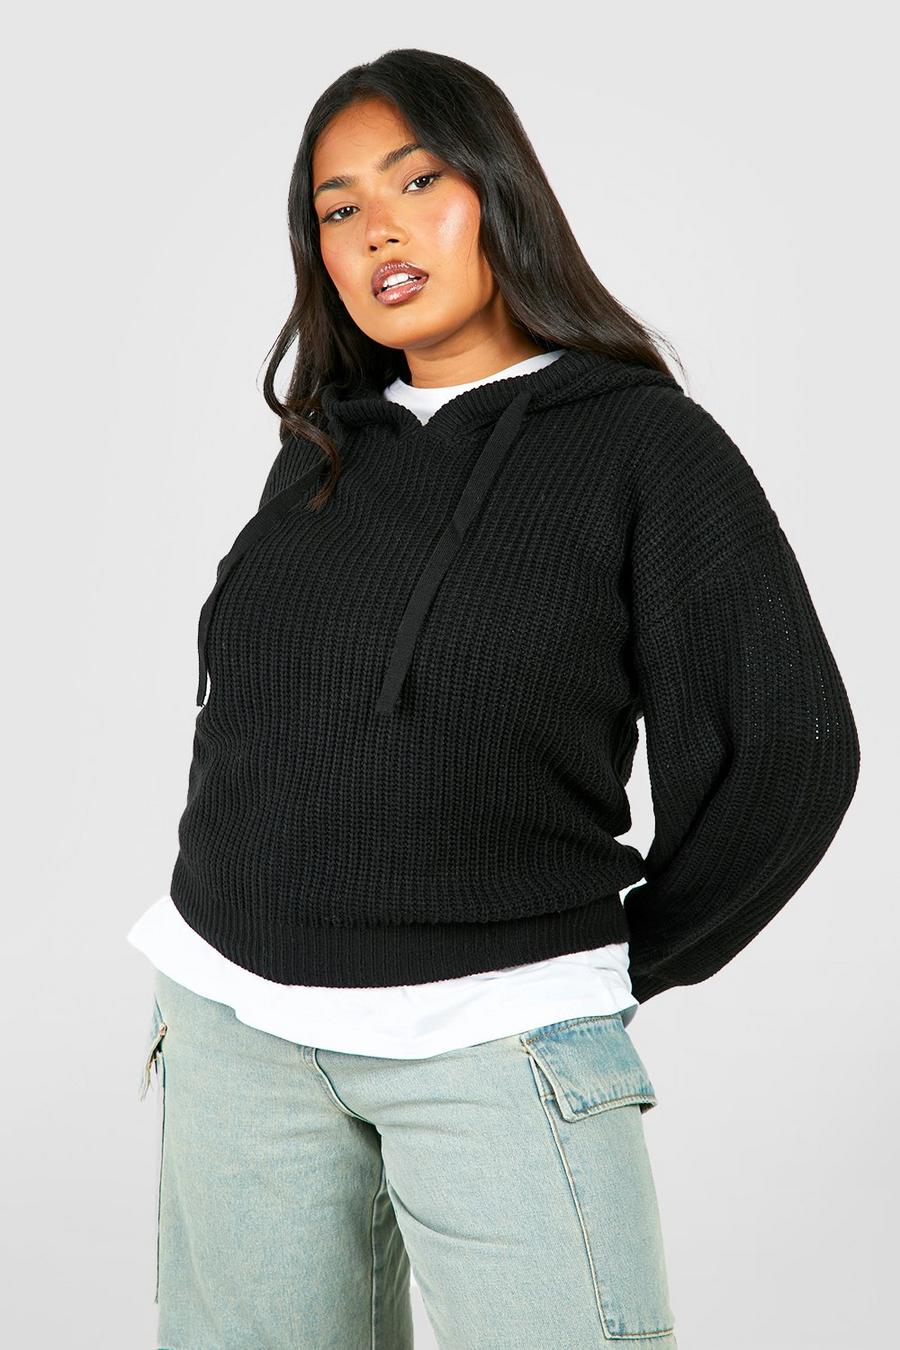 Maglione Plus Size da donna in maglia stile pescatore con cappuccio, Black negro